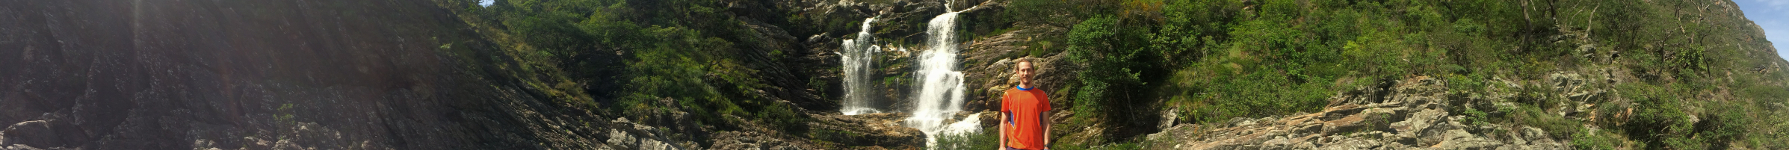 Cachoeiras das 7 quedas - Lapinha da Serra, MG/Brasil